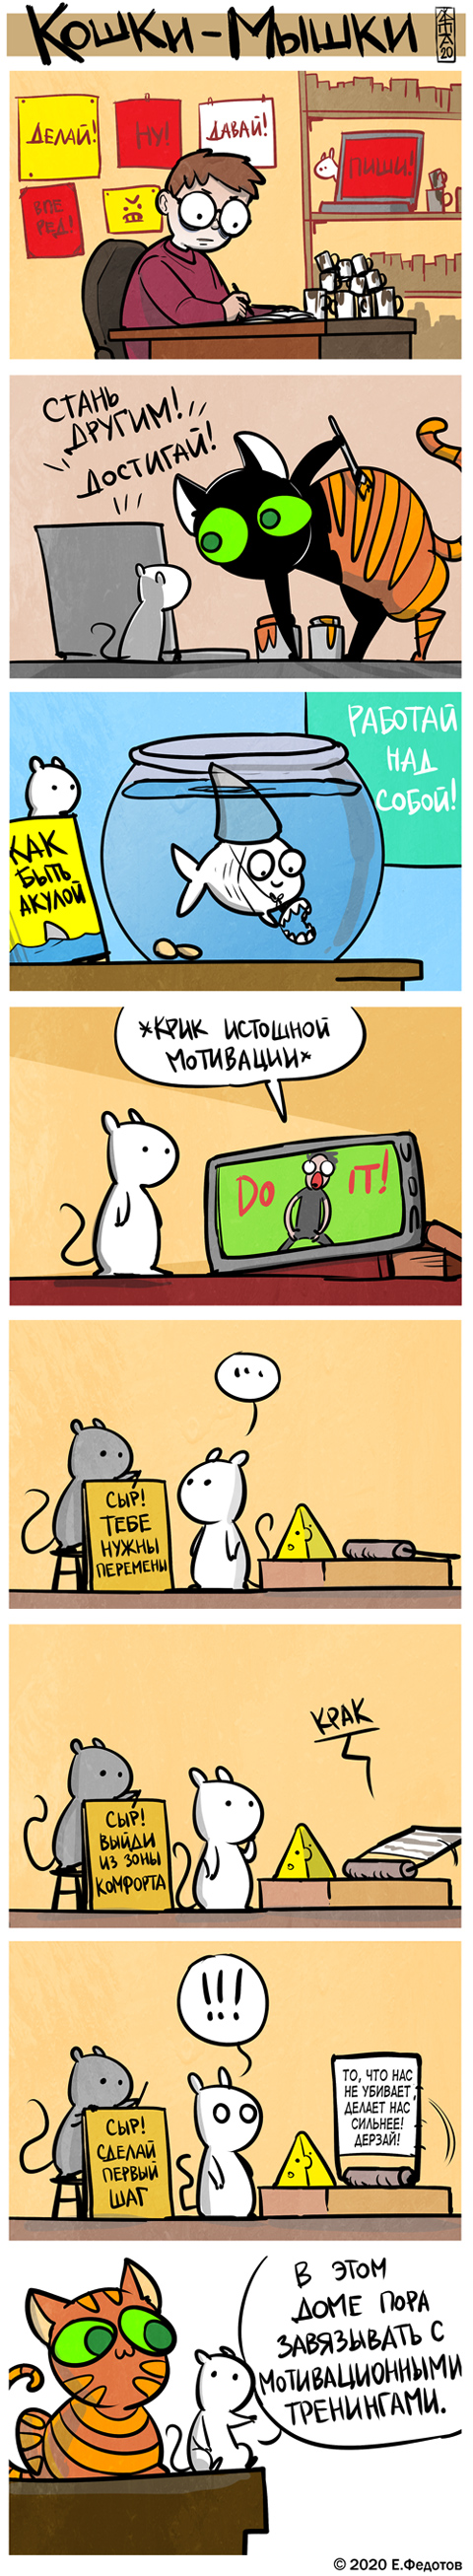 Комикс Кошки-мышки: выпуск №496